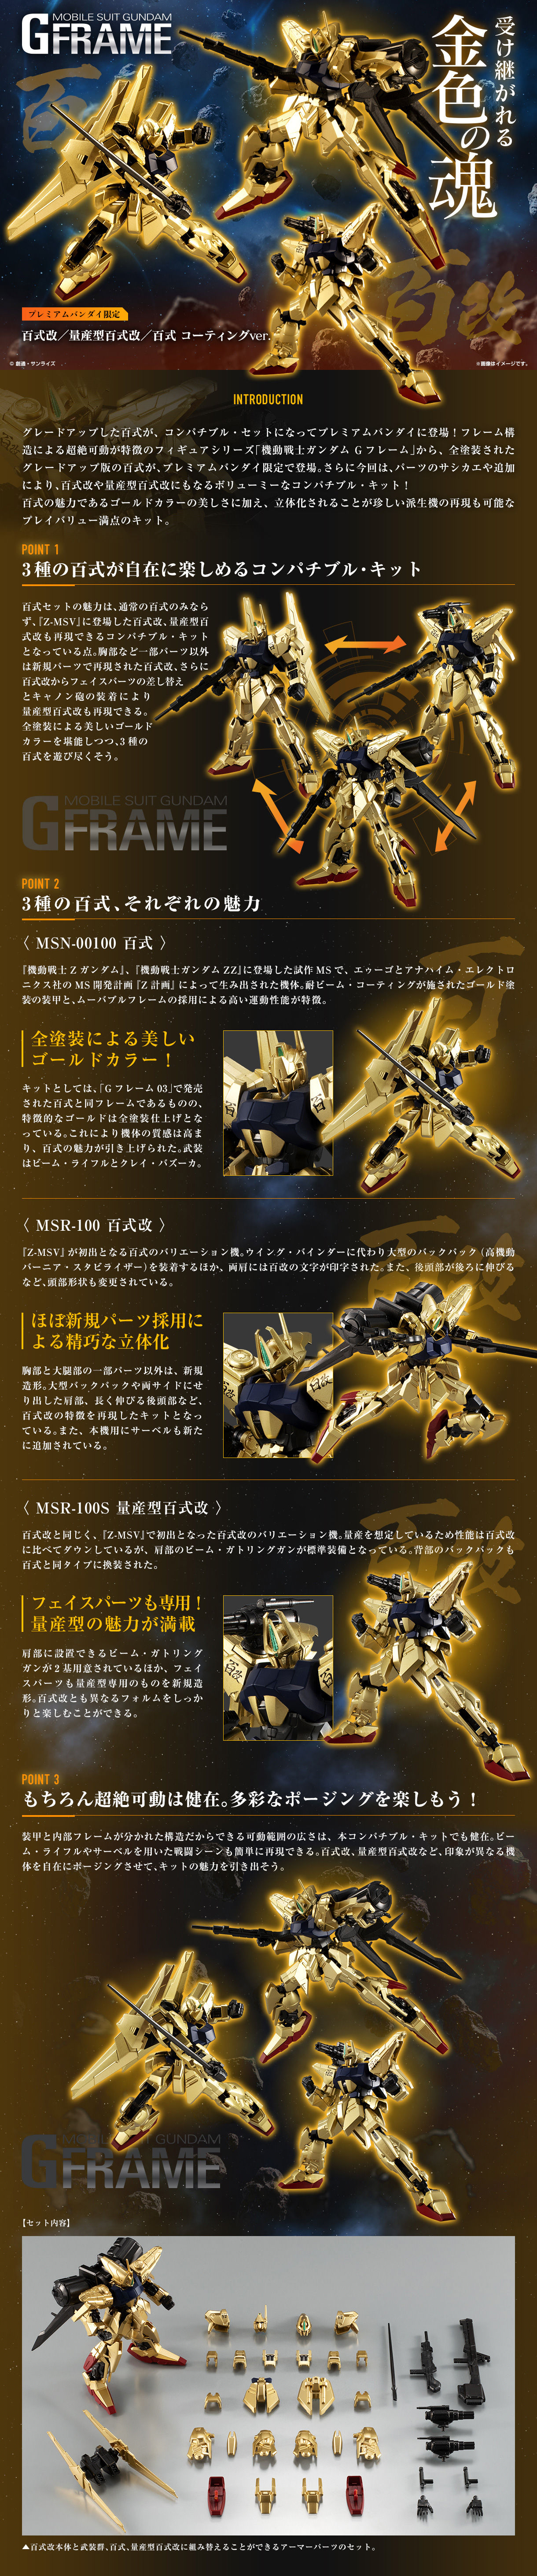 Mobile Suit Gundam G Frame SP—MSN-00100 Hyaku Shiki/MSR-100 Hyaku Shiki Kai/MSR-100R M.P.T Hyaku Shiki Kai(Gold Coating)